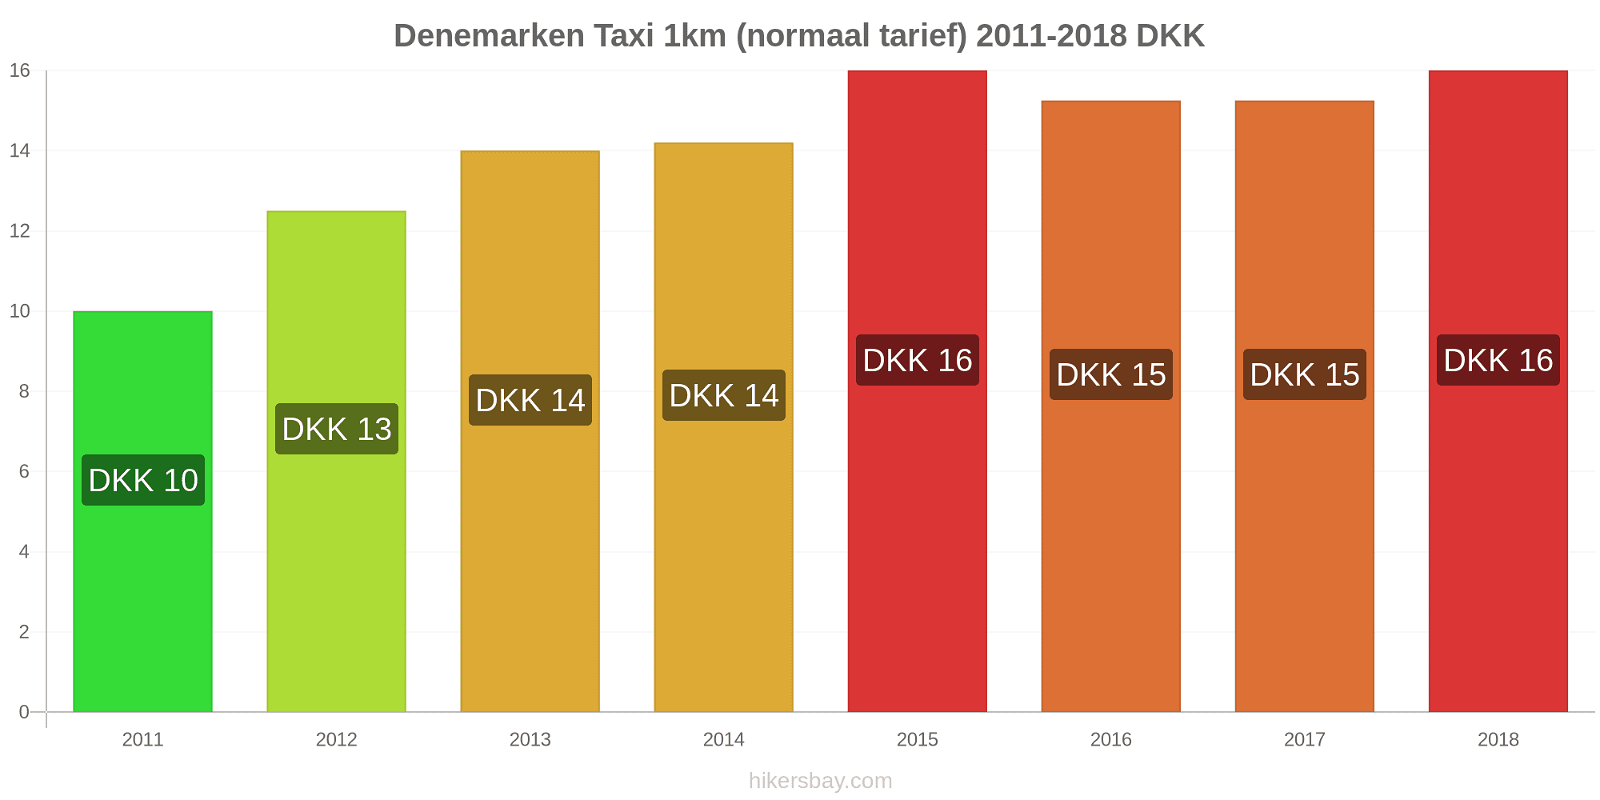 Denemarken prijswijzigingen Taxi 1km (normaal tarief) hikersbay.com